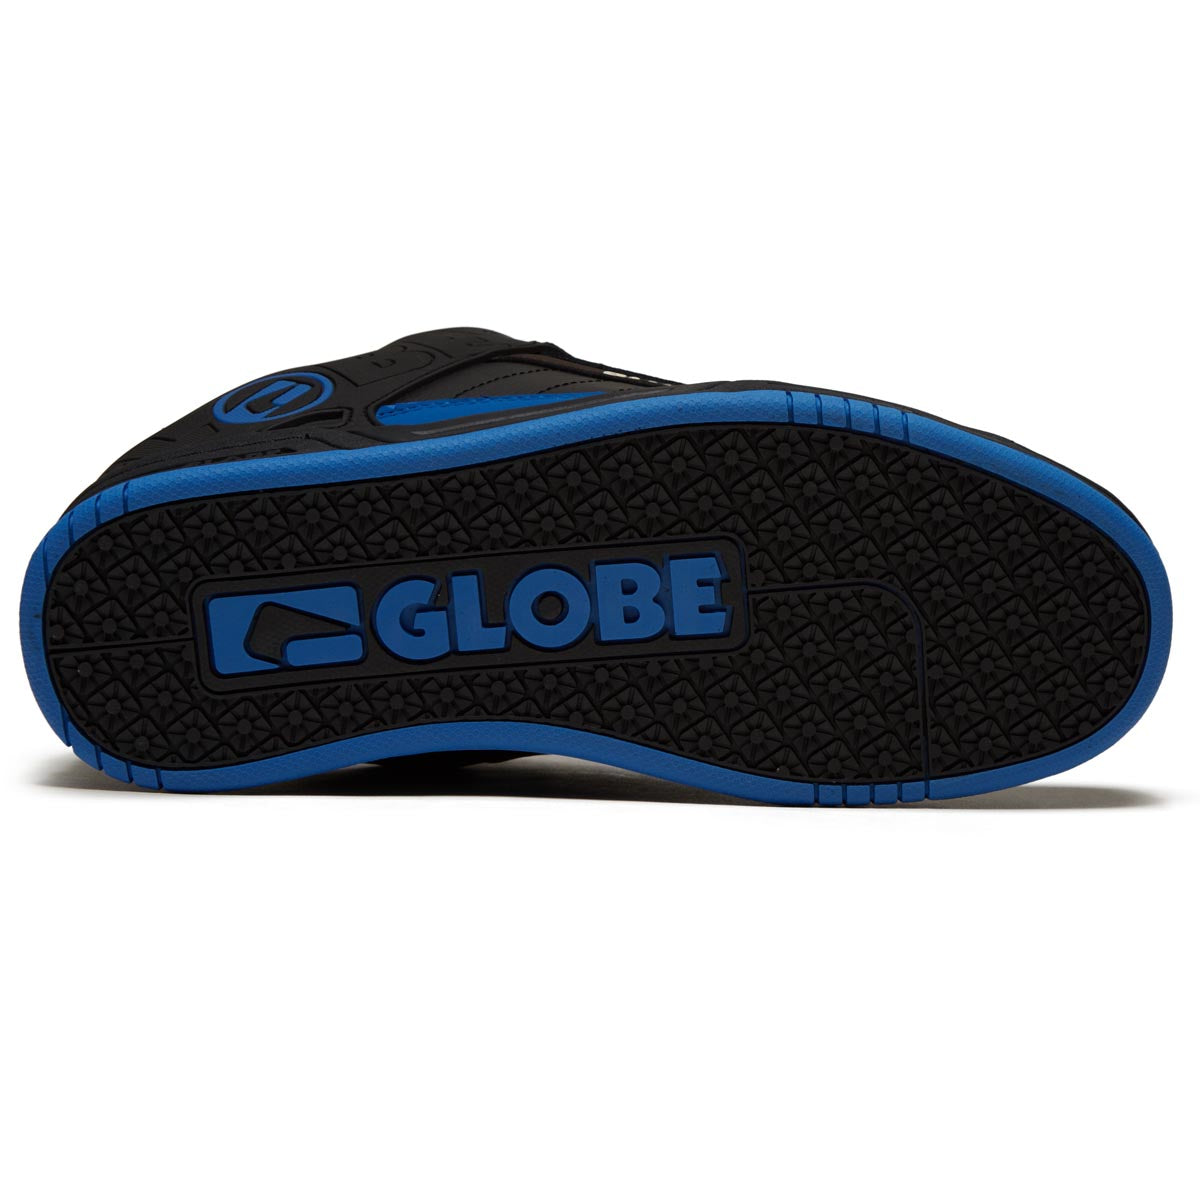 Globe Tilt Shoes - Black/Tan/Cobalt image 4